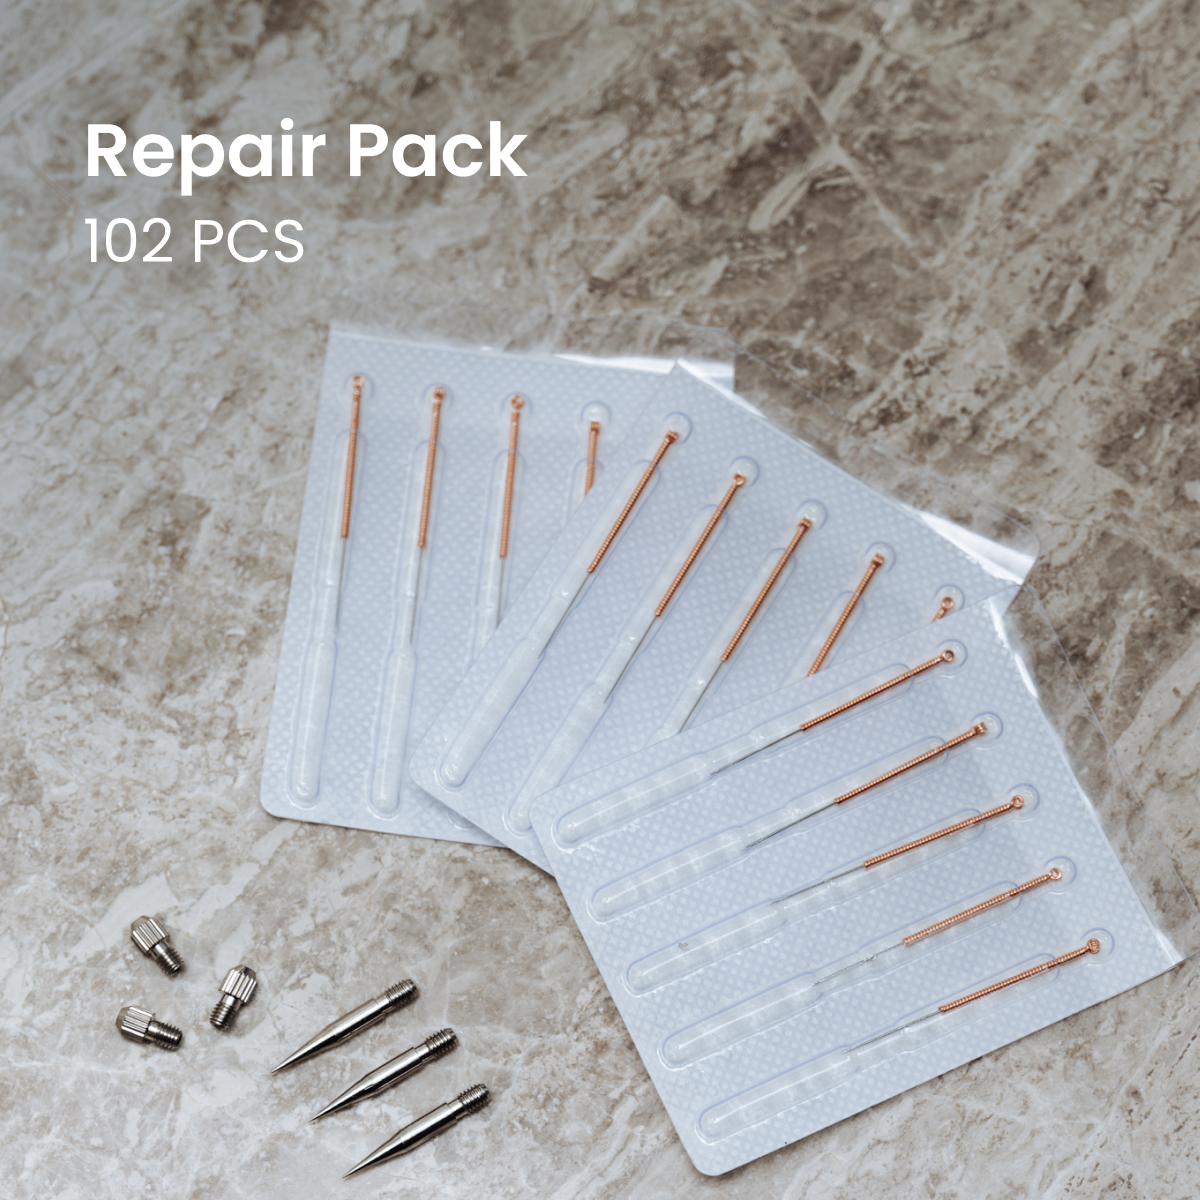 Bundle-Angebot: Trio-Kit + Reparaturpaket + kostenloses Handbuch